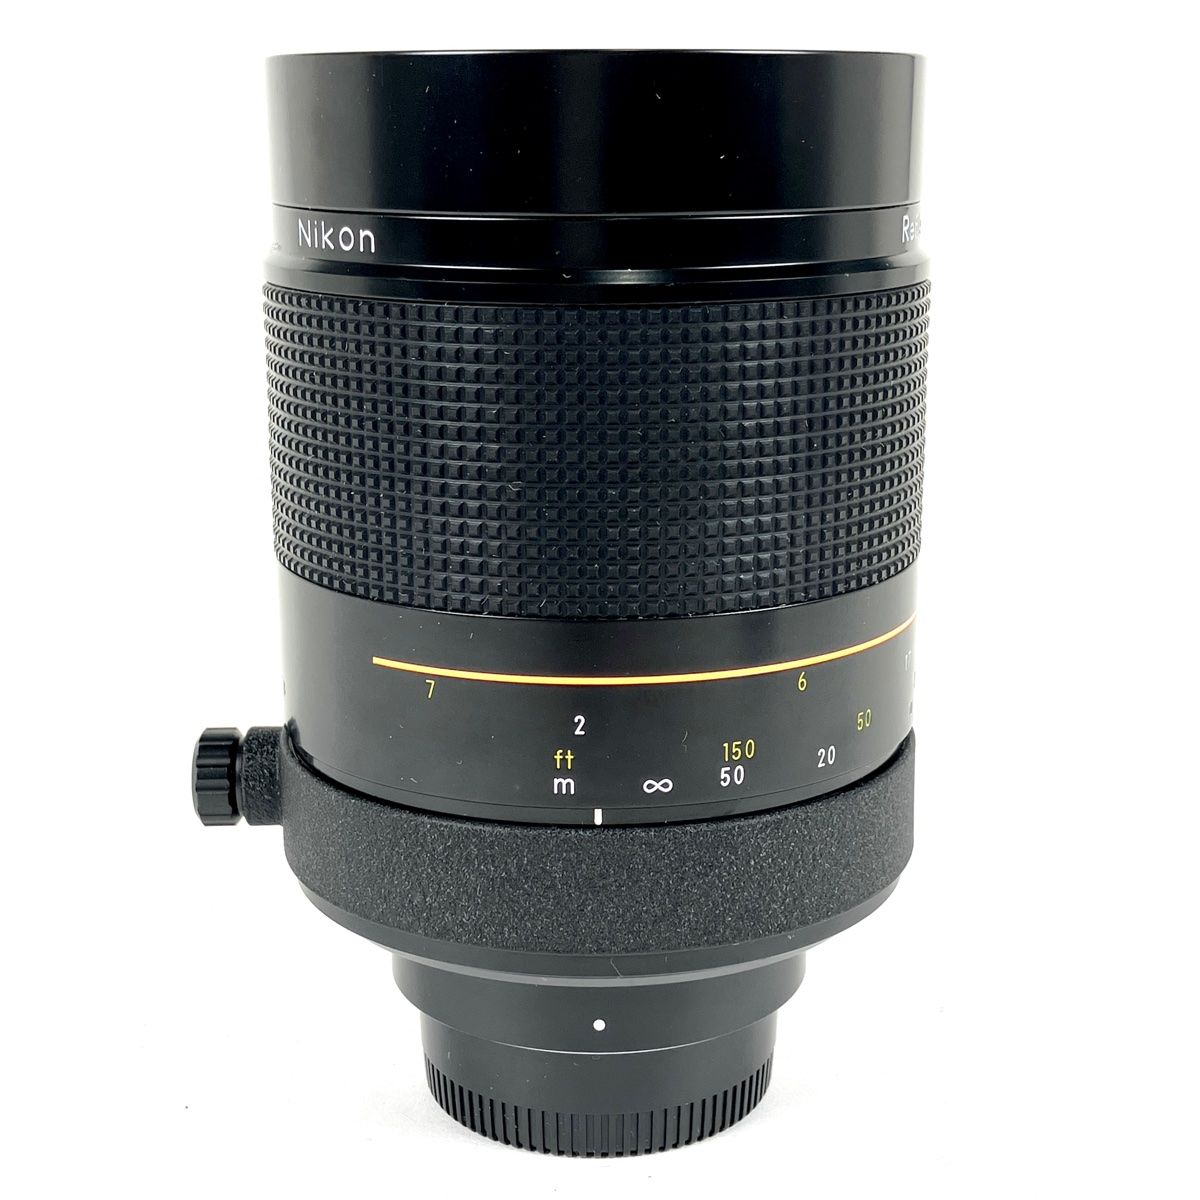 ニコン Nikon Reflex-NIKKOR 500mm F8 レフレックス ミラー 一眼カメラ